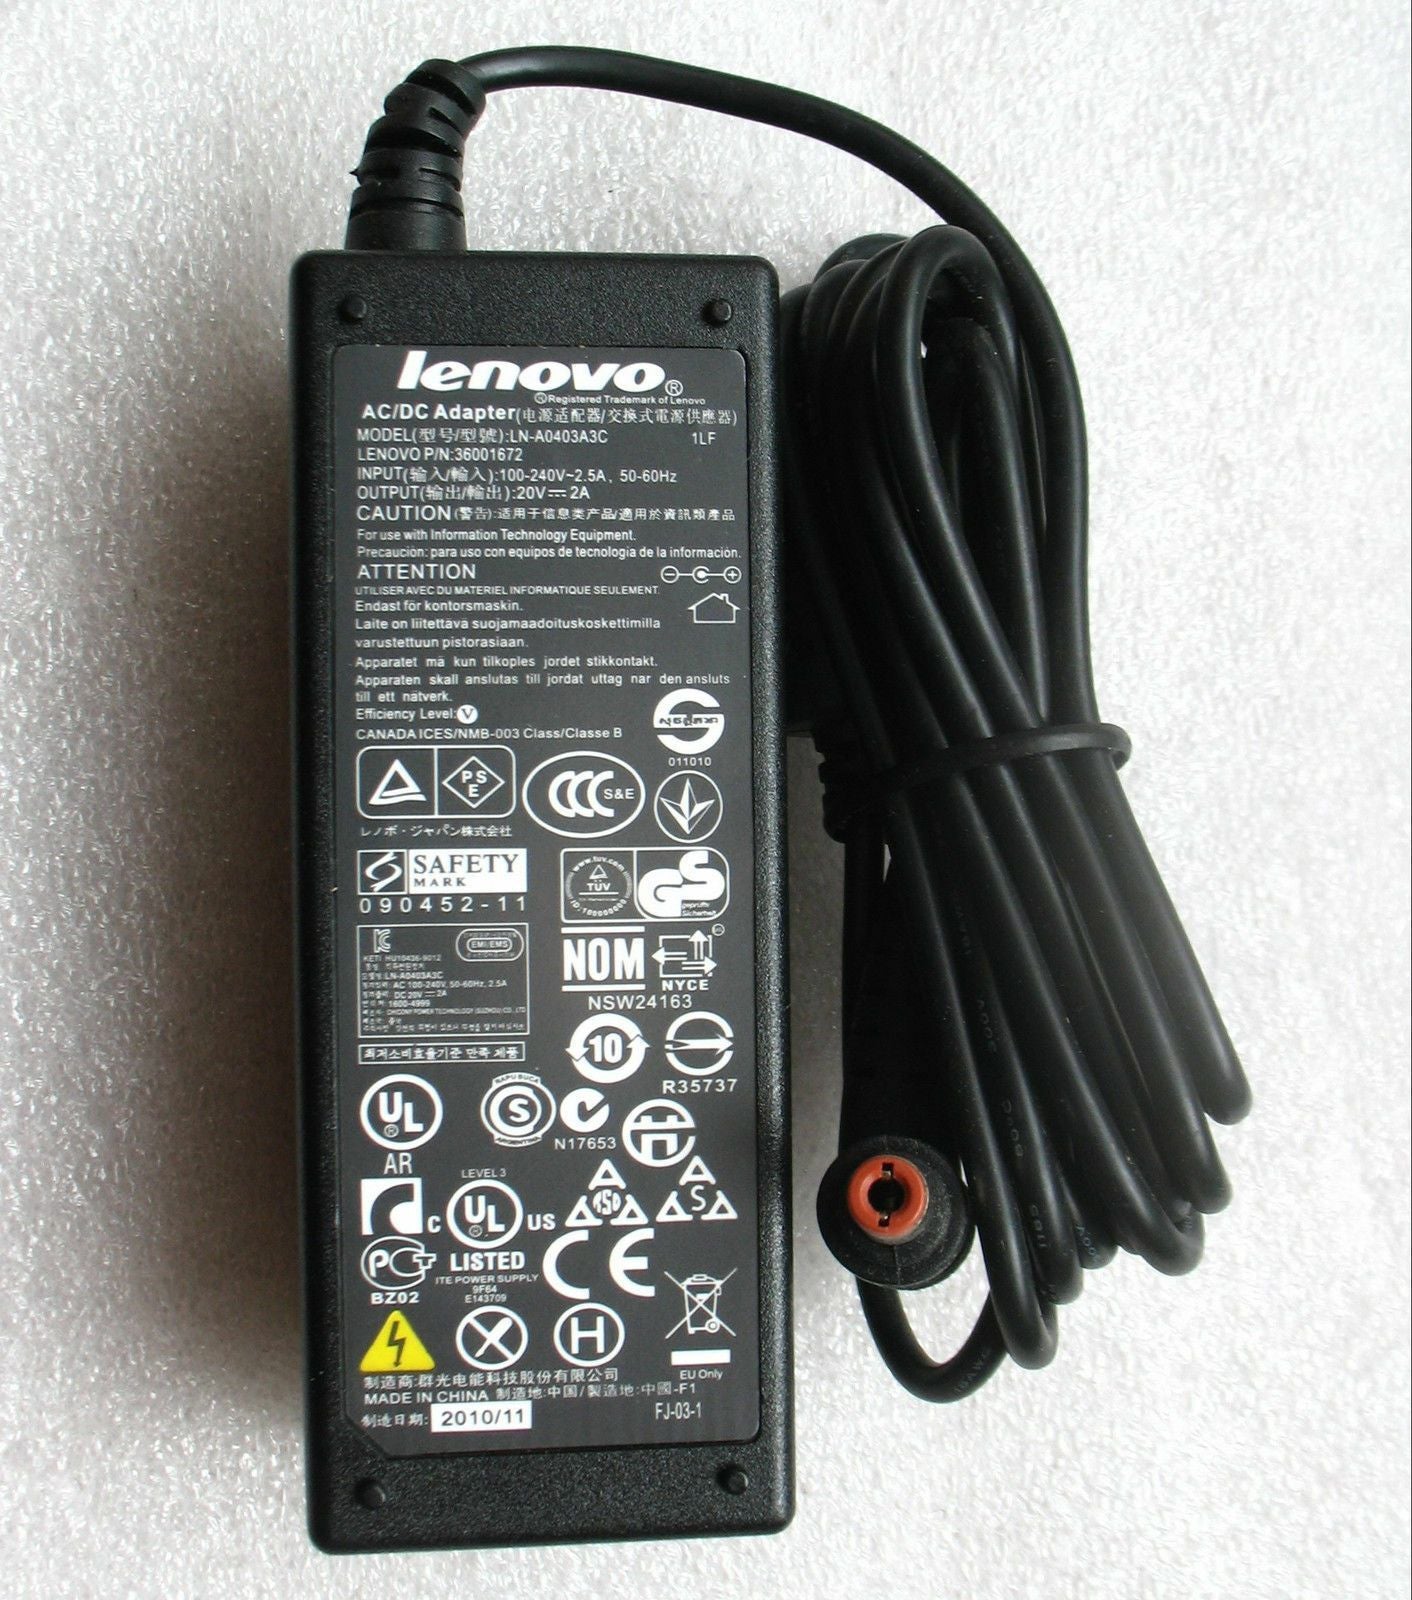 Genuine Lenovo 40W AC Adapter for IdeaPad U310 4375-2BU,LN-A0403A3C,ADP-40NH B